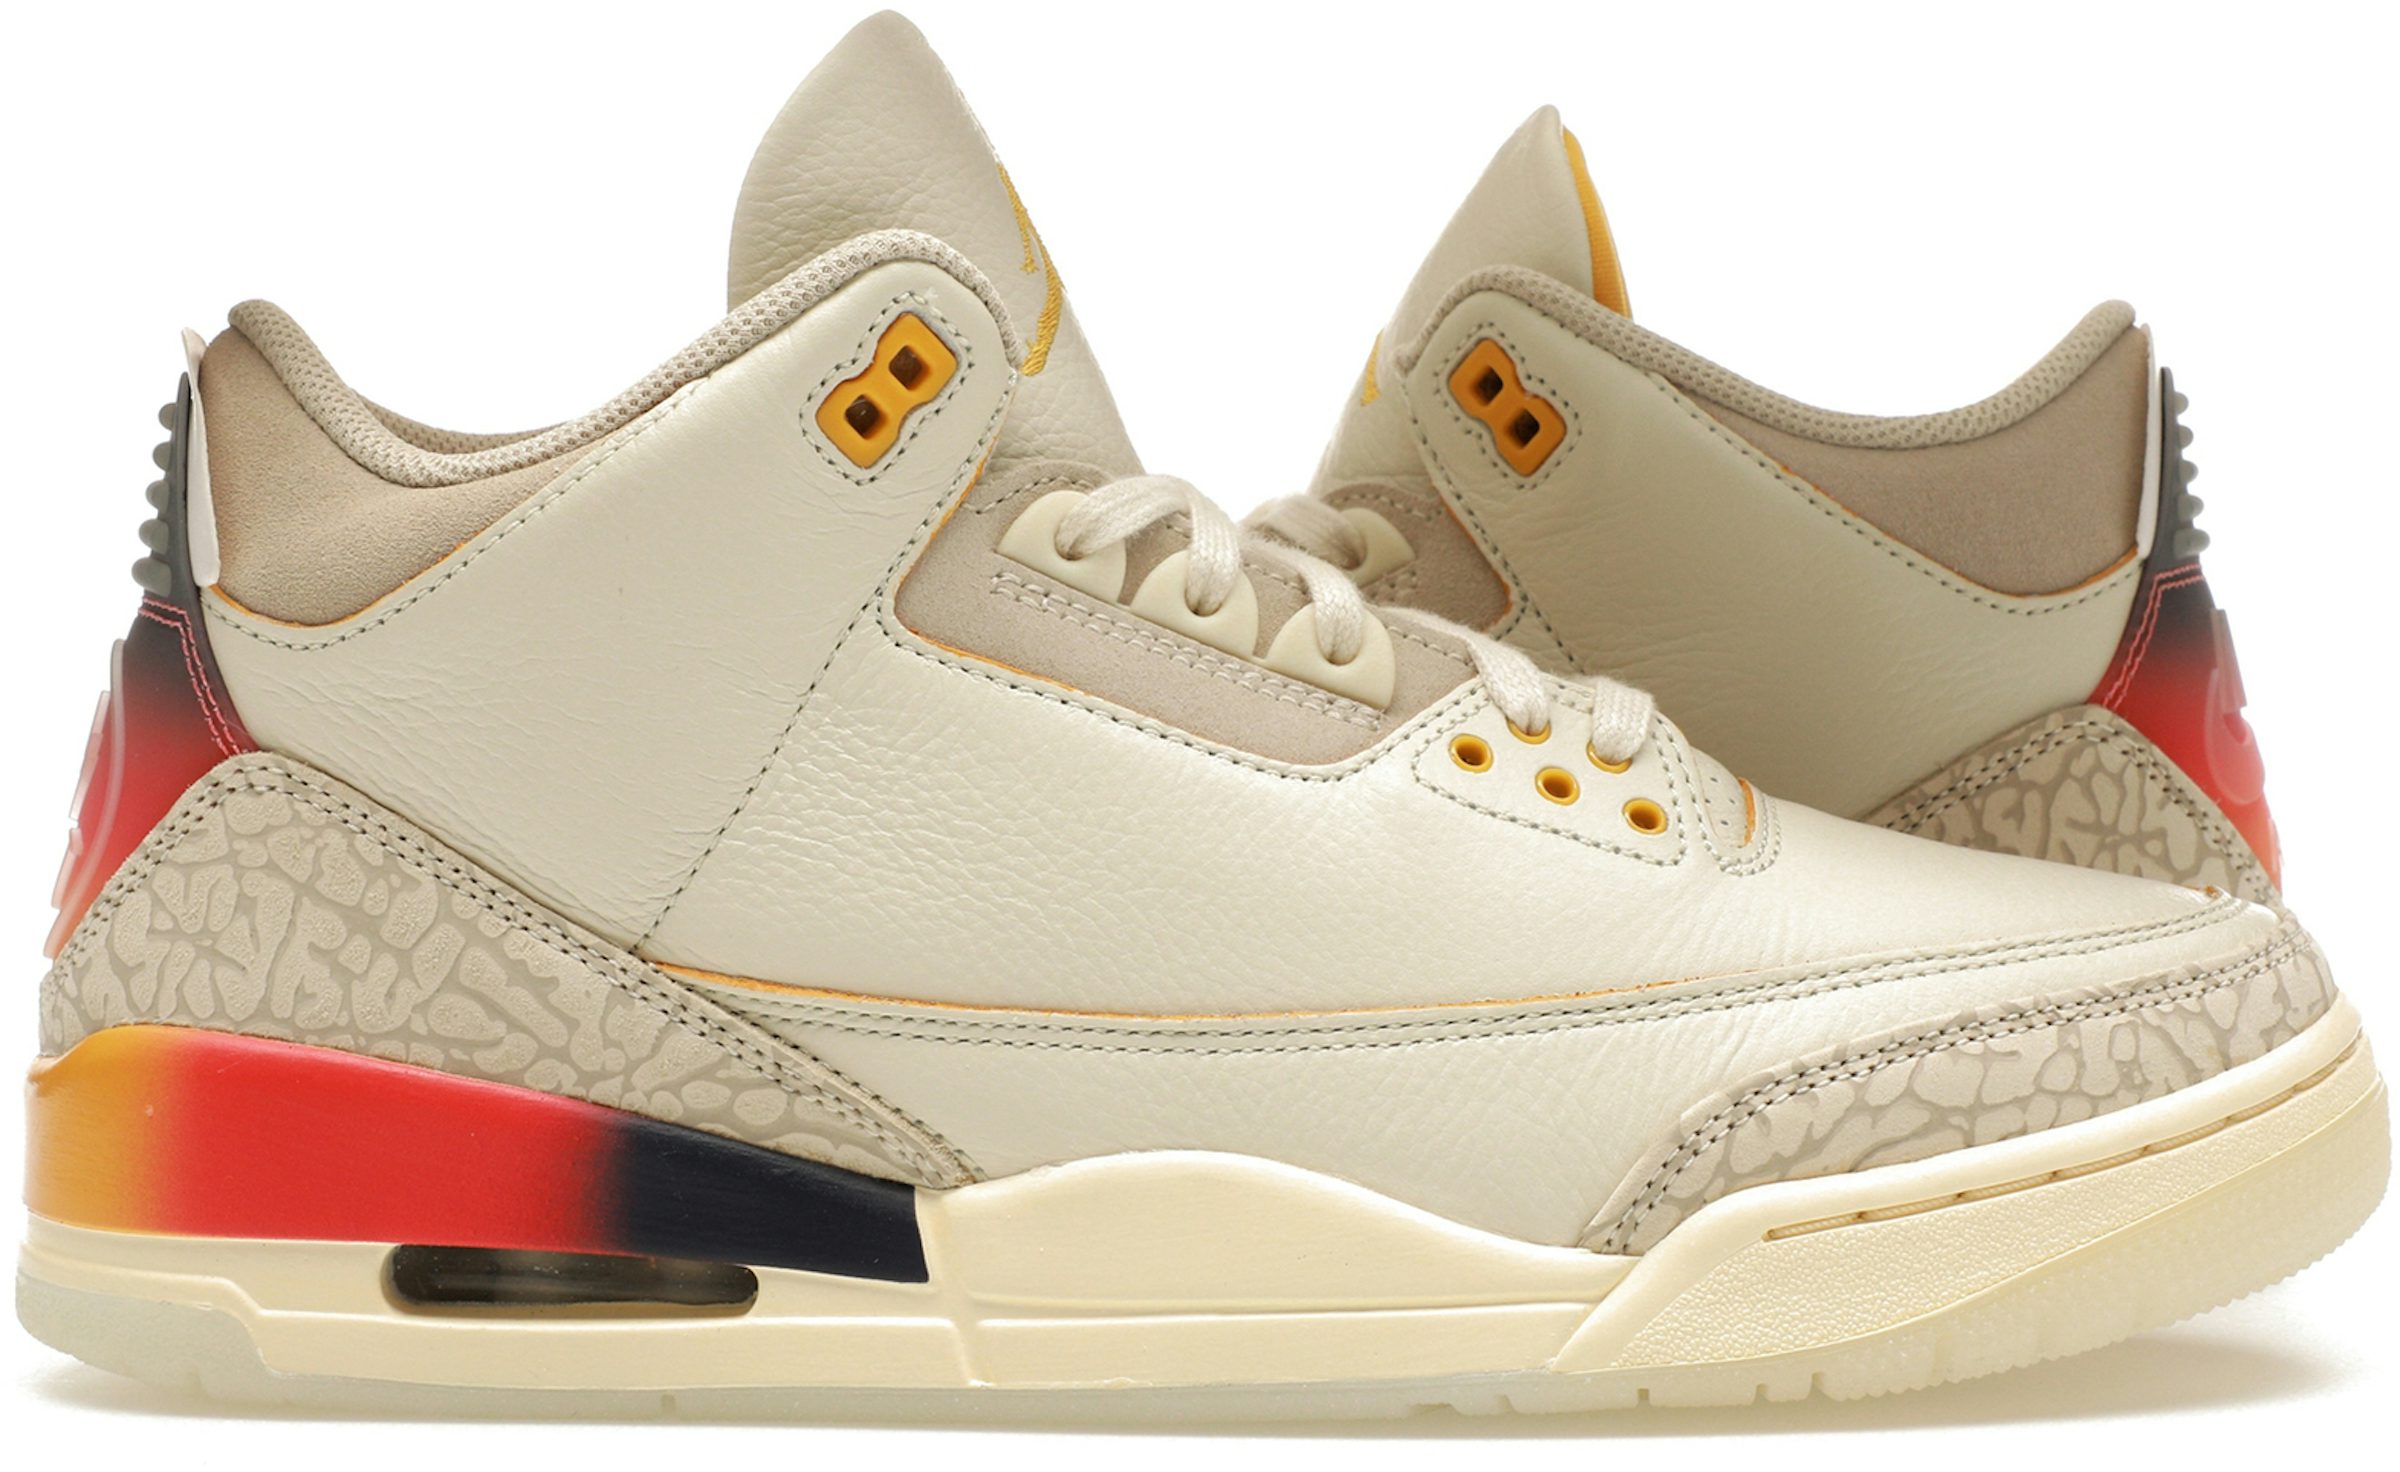 Buy Air Jordan 13 Shoes & New Sneakers - StockX